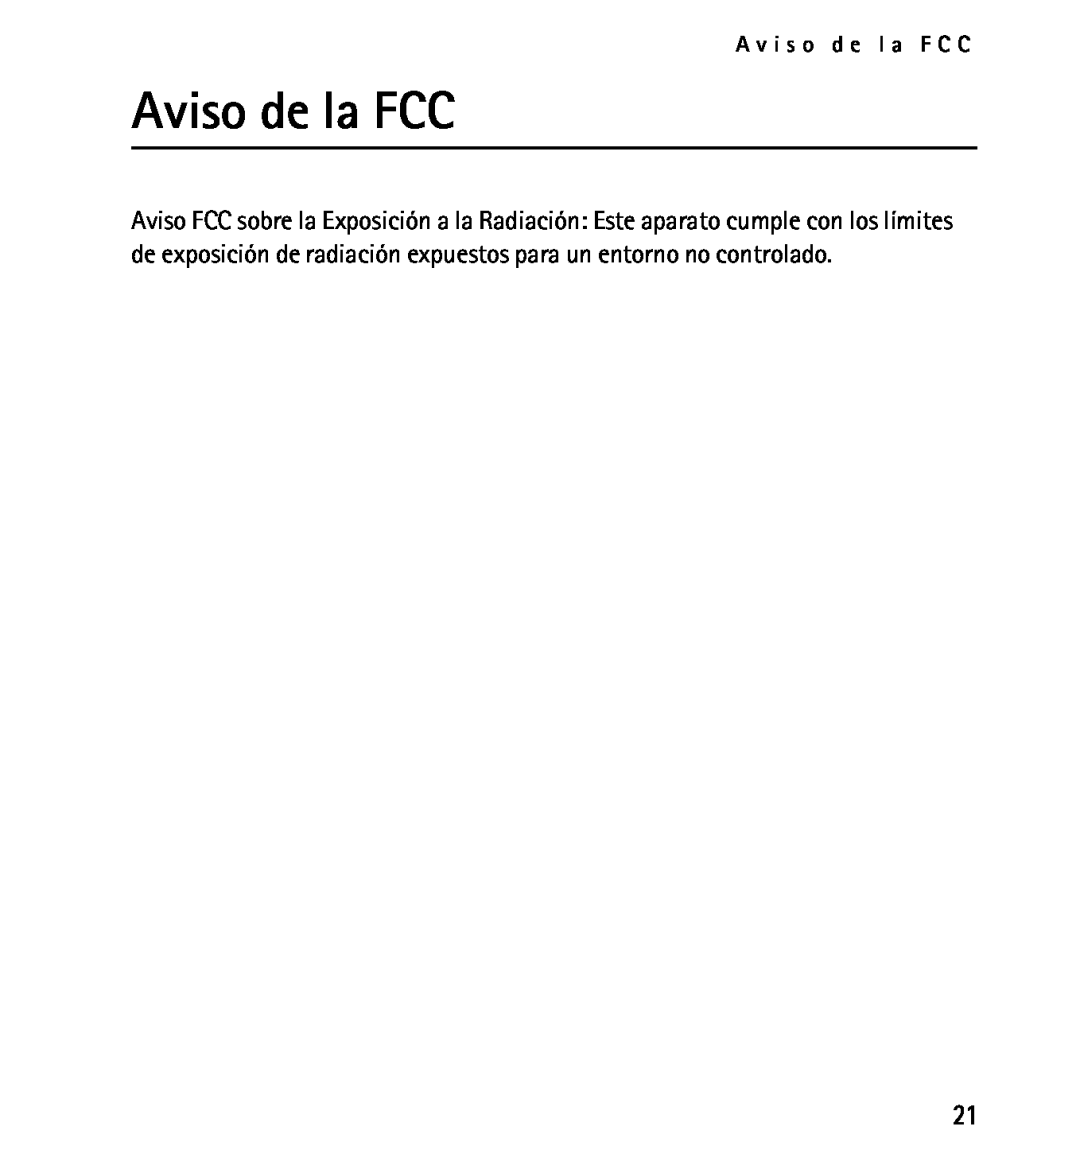 Nokia 9232254 manual Aviso de la FCC, A v i s o d e l a F C C 